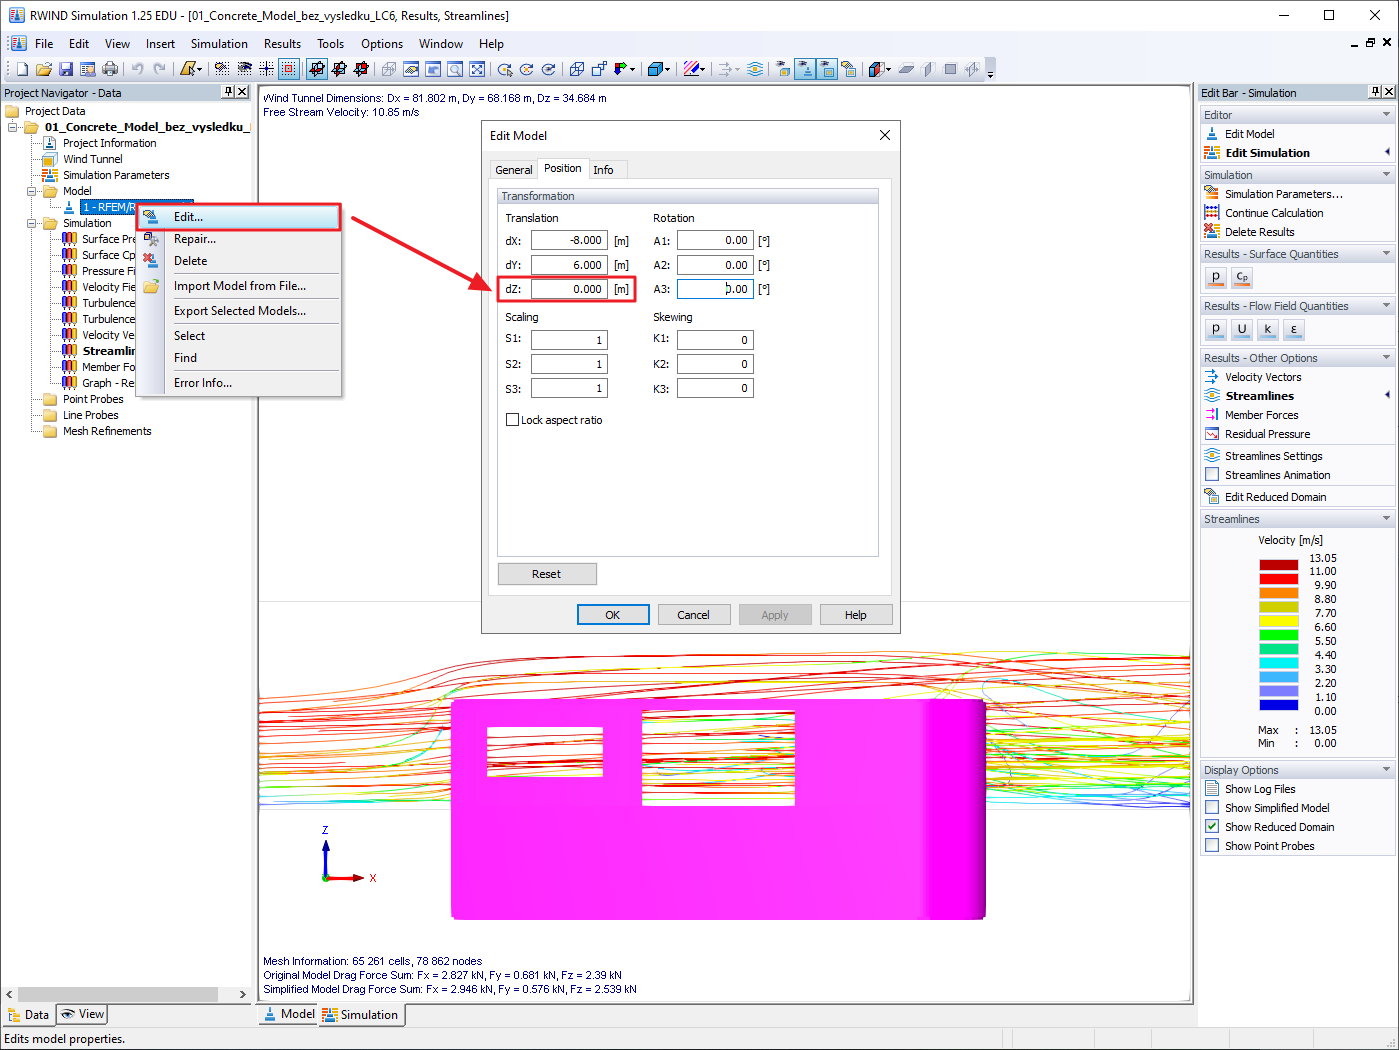 Pode influenciar a posição do modelo importado utilizando a caixa de diálogo "Editar modelo" diretamente no RWIND Simulation.